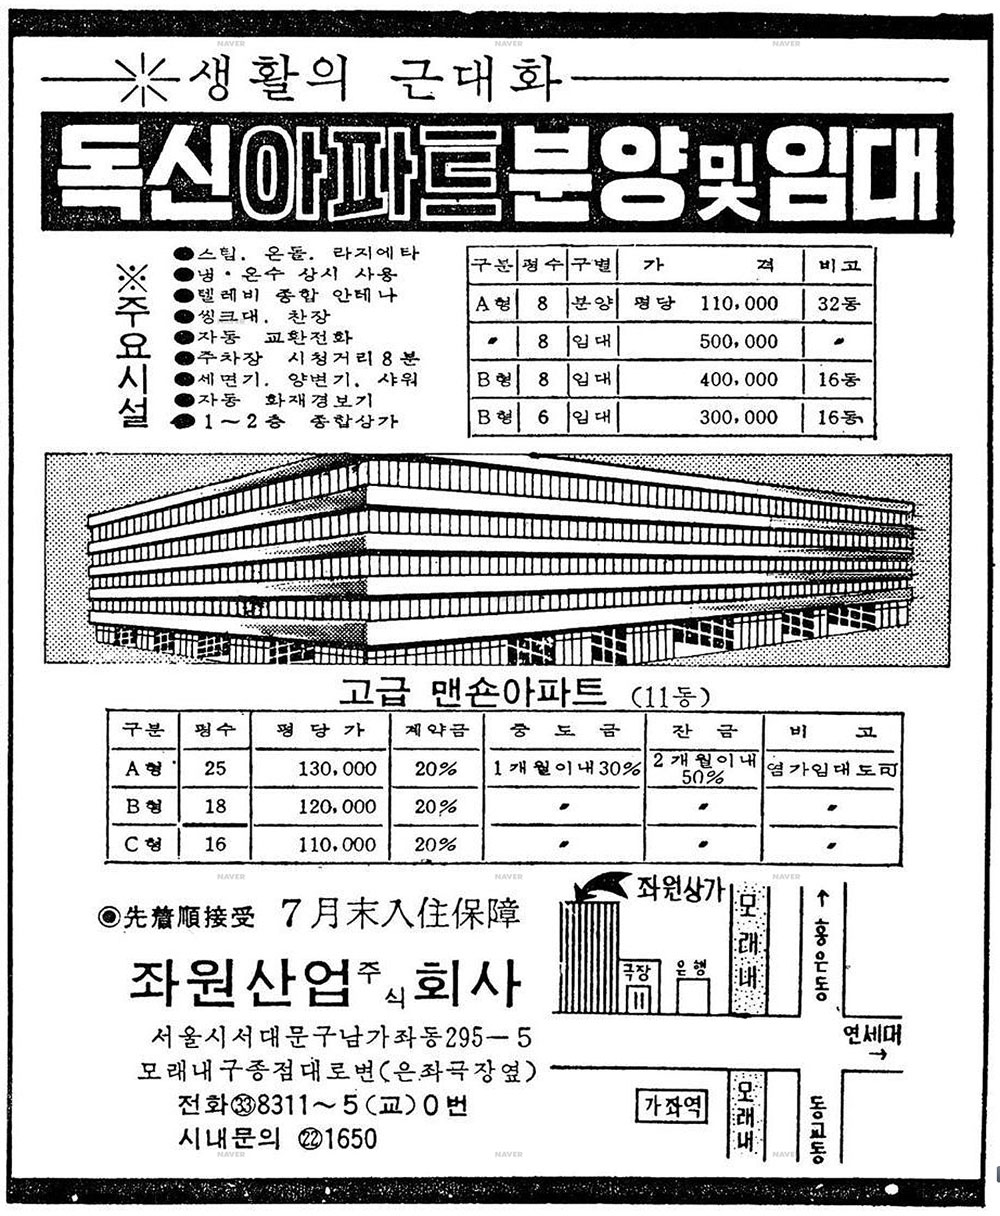 1971년 7월 21일자 경향신문에 실린 좌원 아파트 분양 광고. 매우 간단한 투시도지만 1층의 구조를 짐작할 수 있다. 건축가 황두진 제공